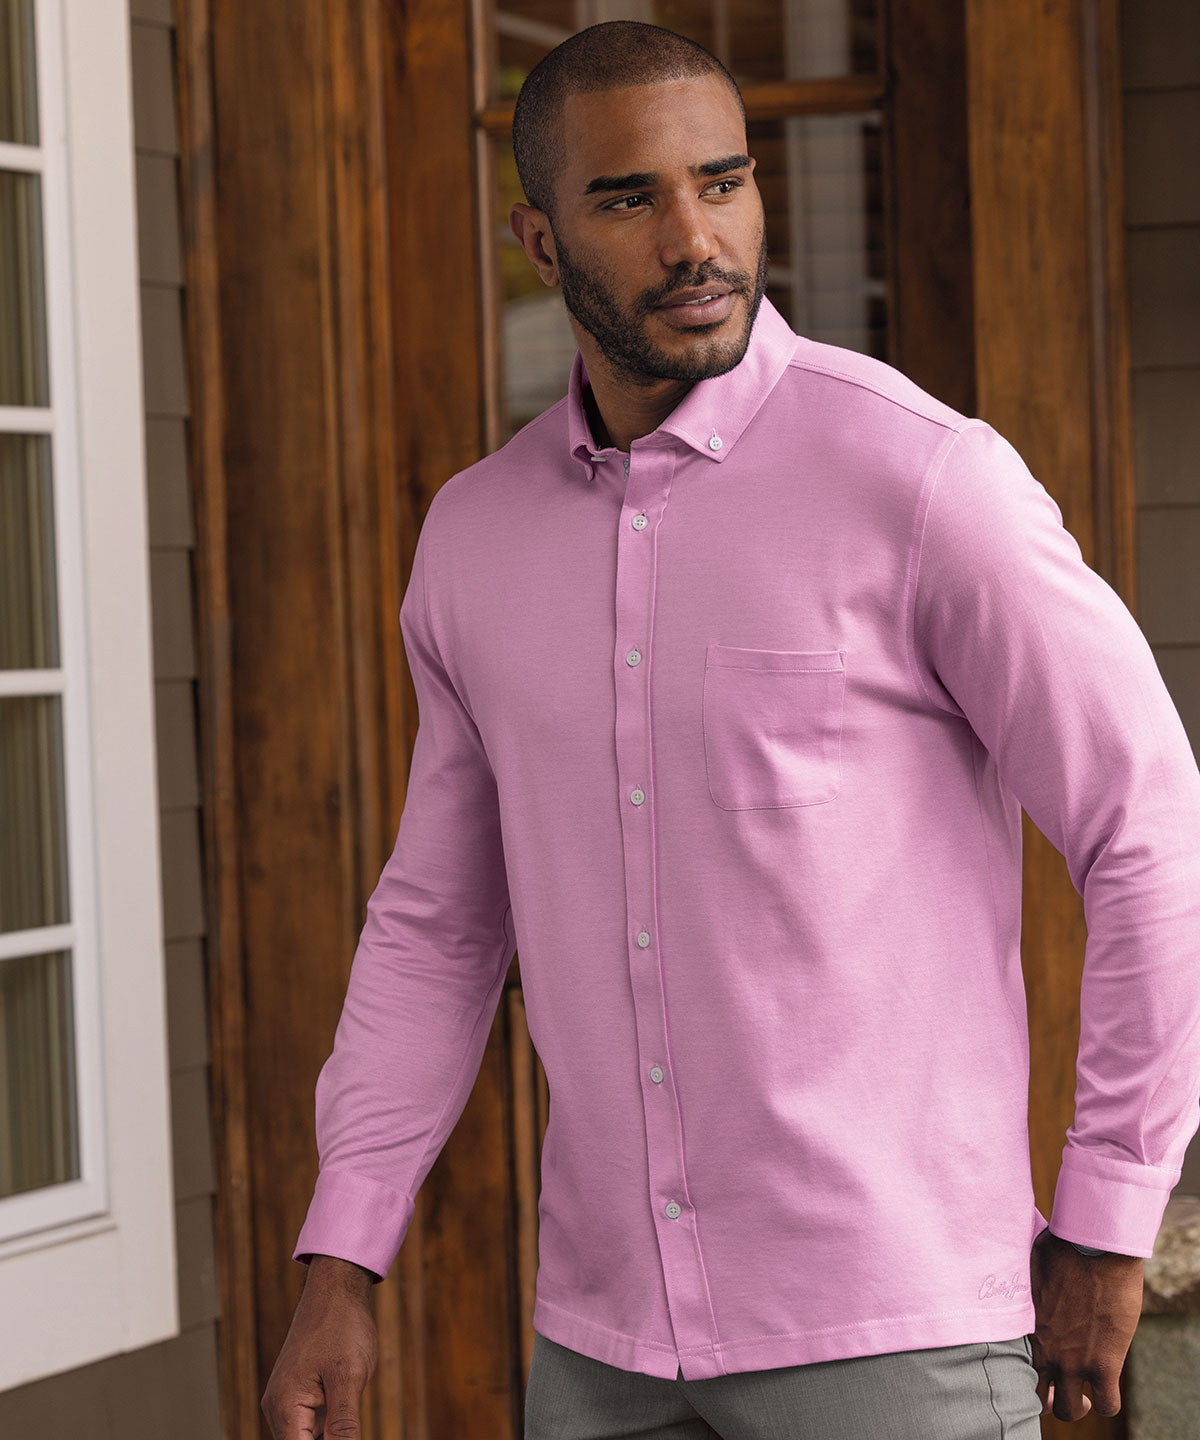 Long Sleeve Purple Dress Shirt, Button Down